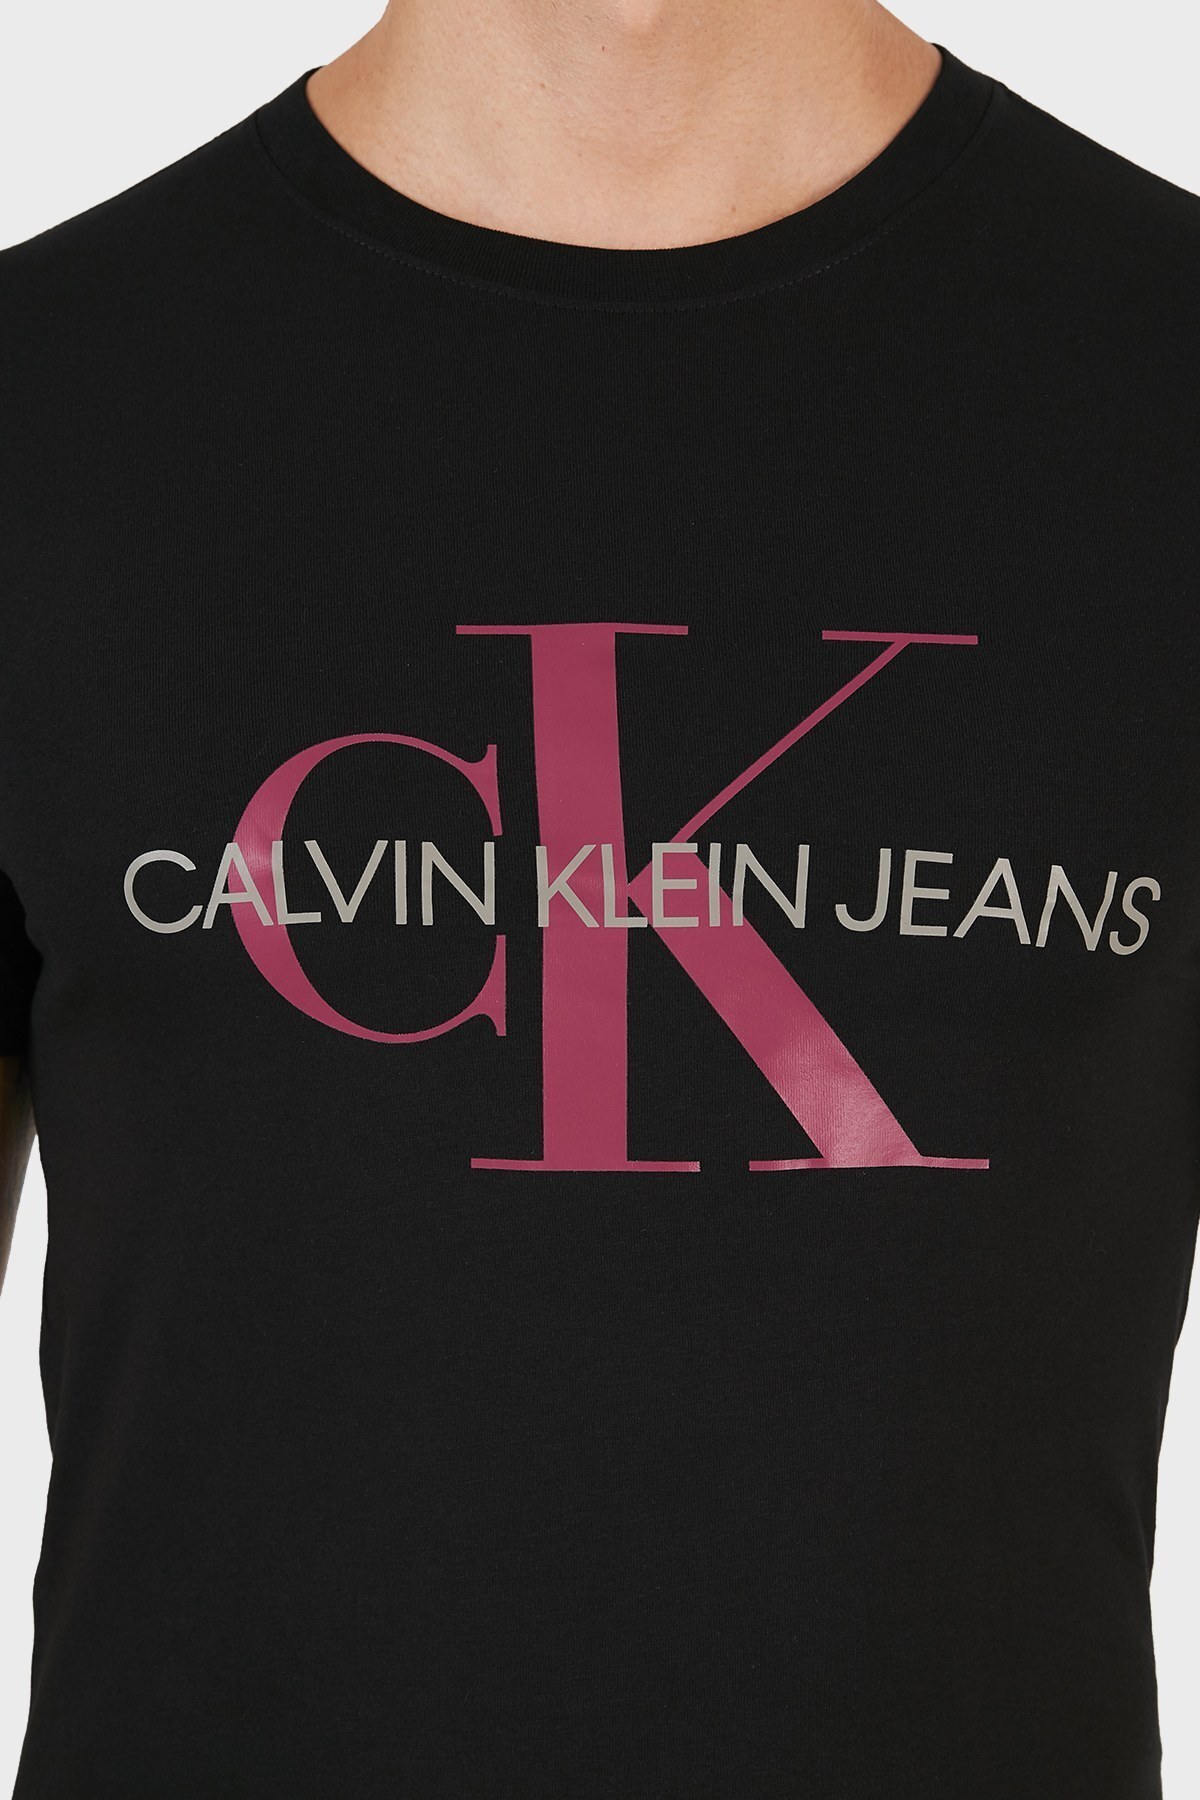 Calvin Klein Baskılı % 100 Pamuk Slim Fit Bisiklet Yaka Erkek T Shirt J30J317065 0GO SİYAH